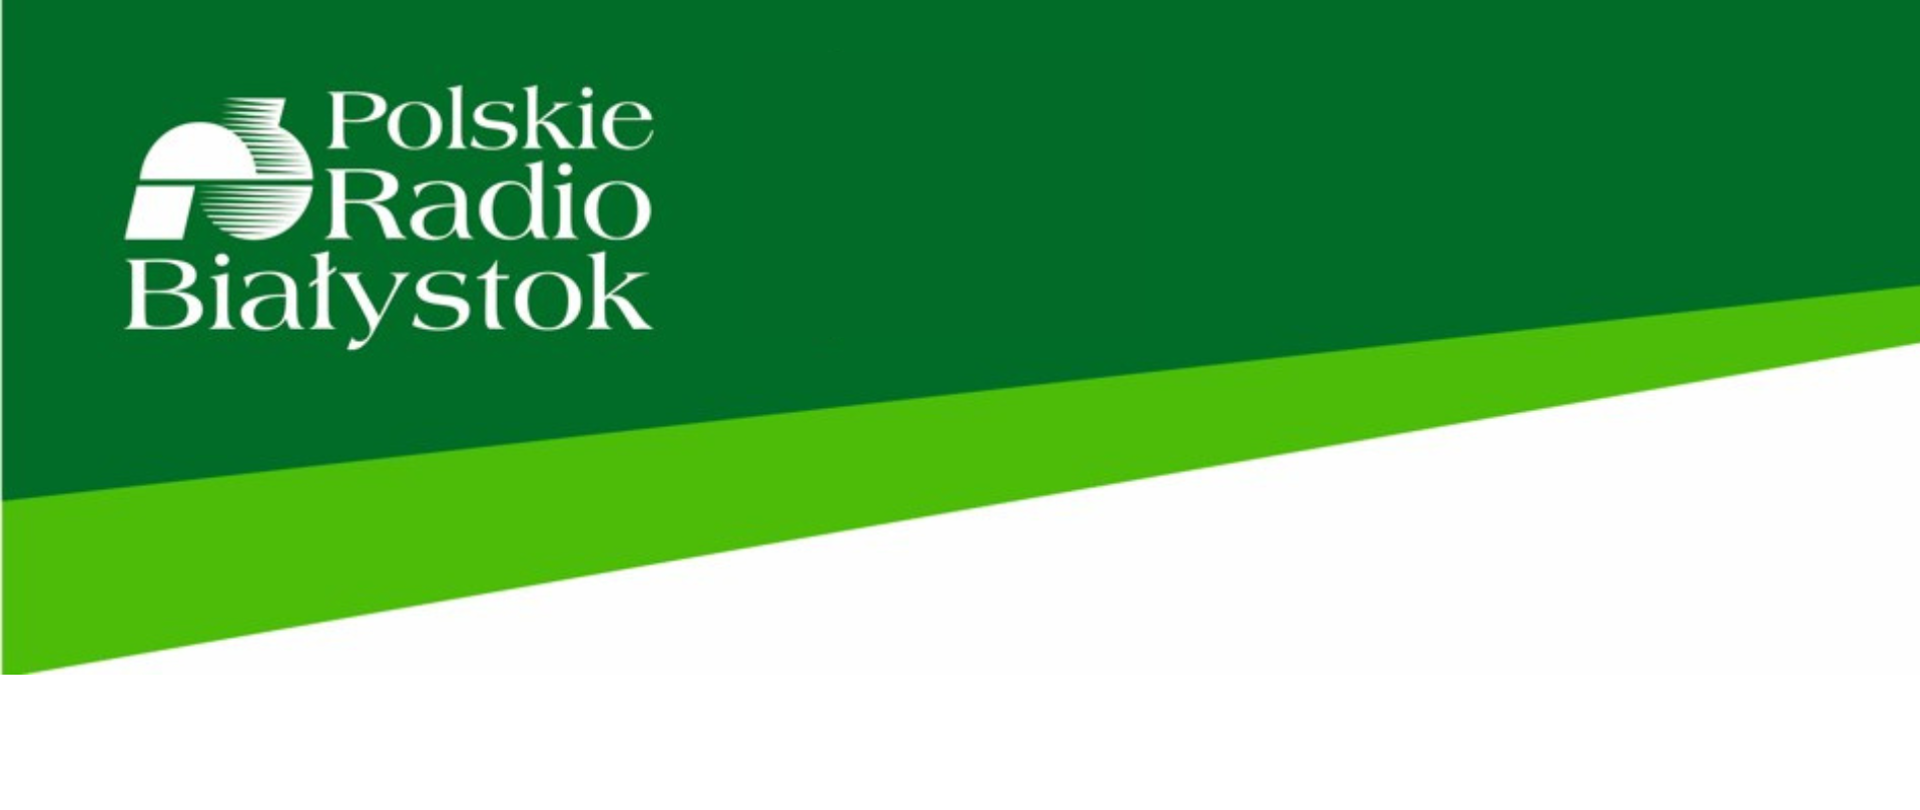 
Grafika z w zielonej kolorystyce z logotypem Polskiego Radia Białystok
